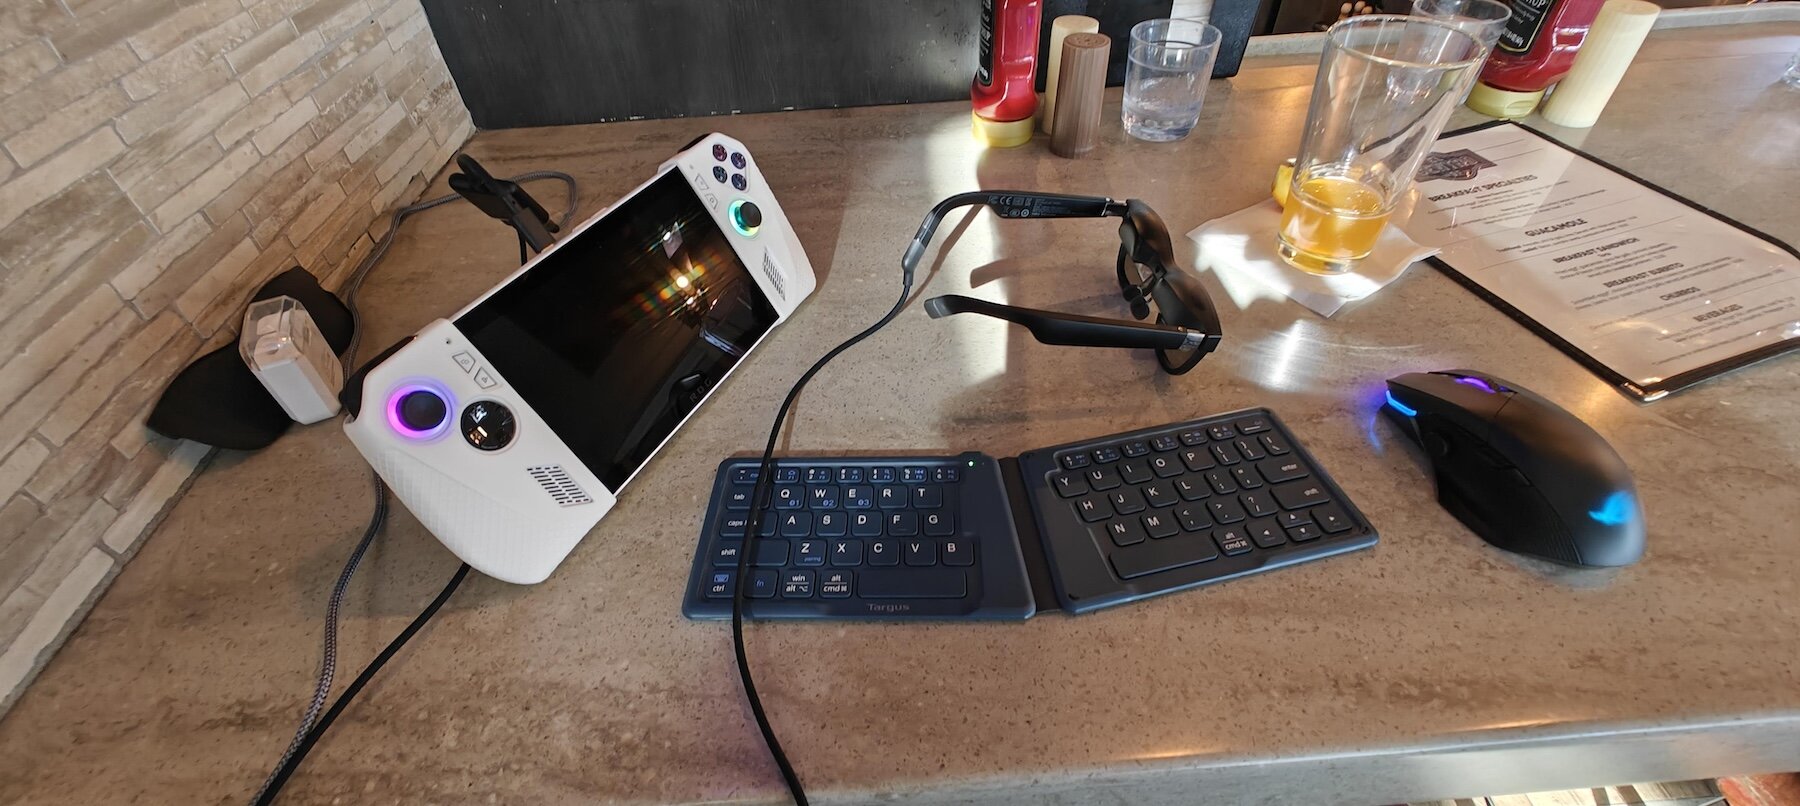 Пользователь похвастался комплектом для портативного гейминга: с AR-очками и складной клавиатурой